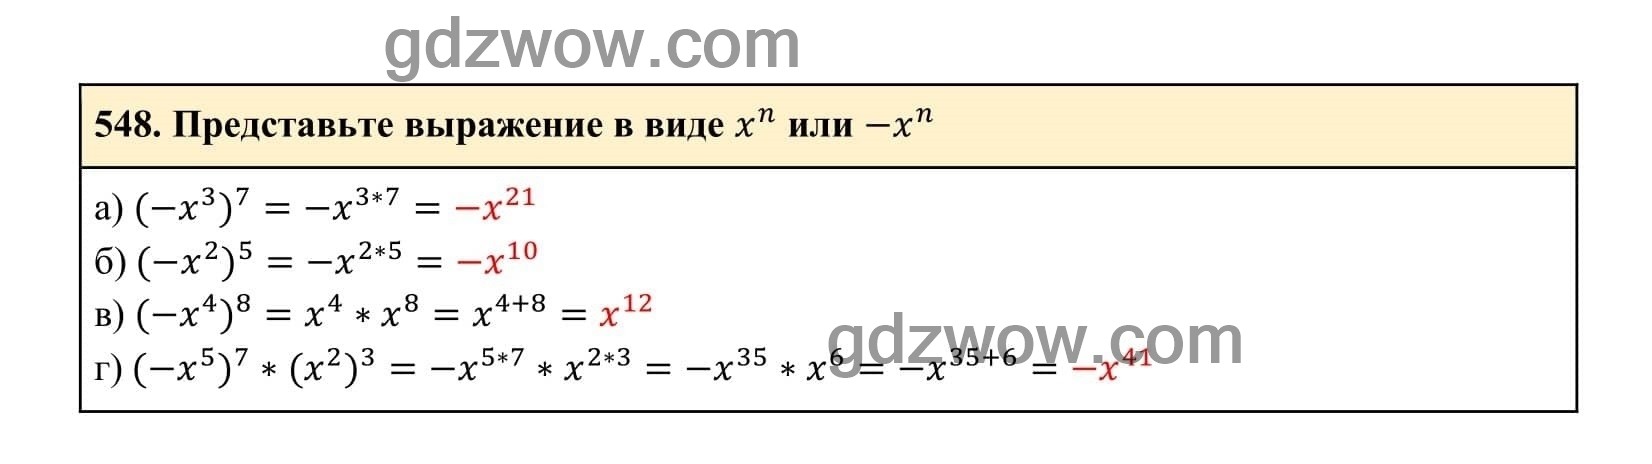 Упражнение 548 - ГДЗ по Алгебре 7 класс Учебник Макарычев (решебник) - GDZwow